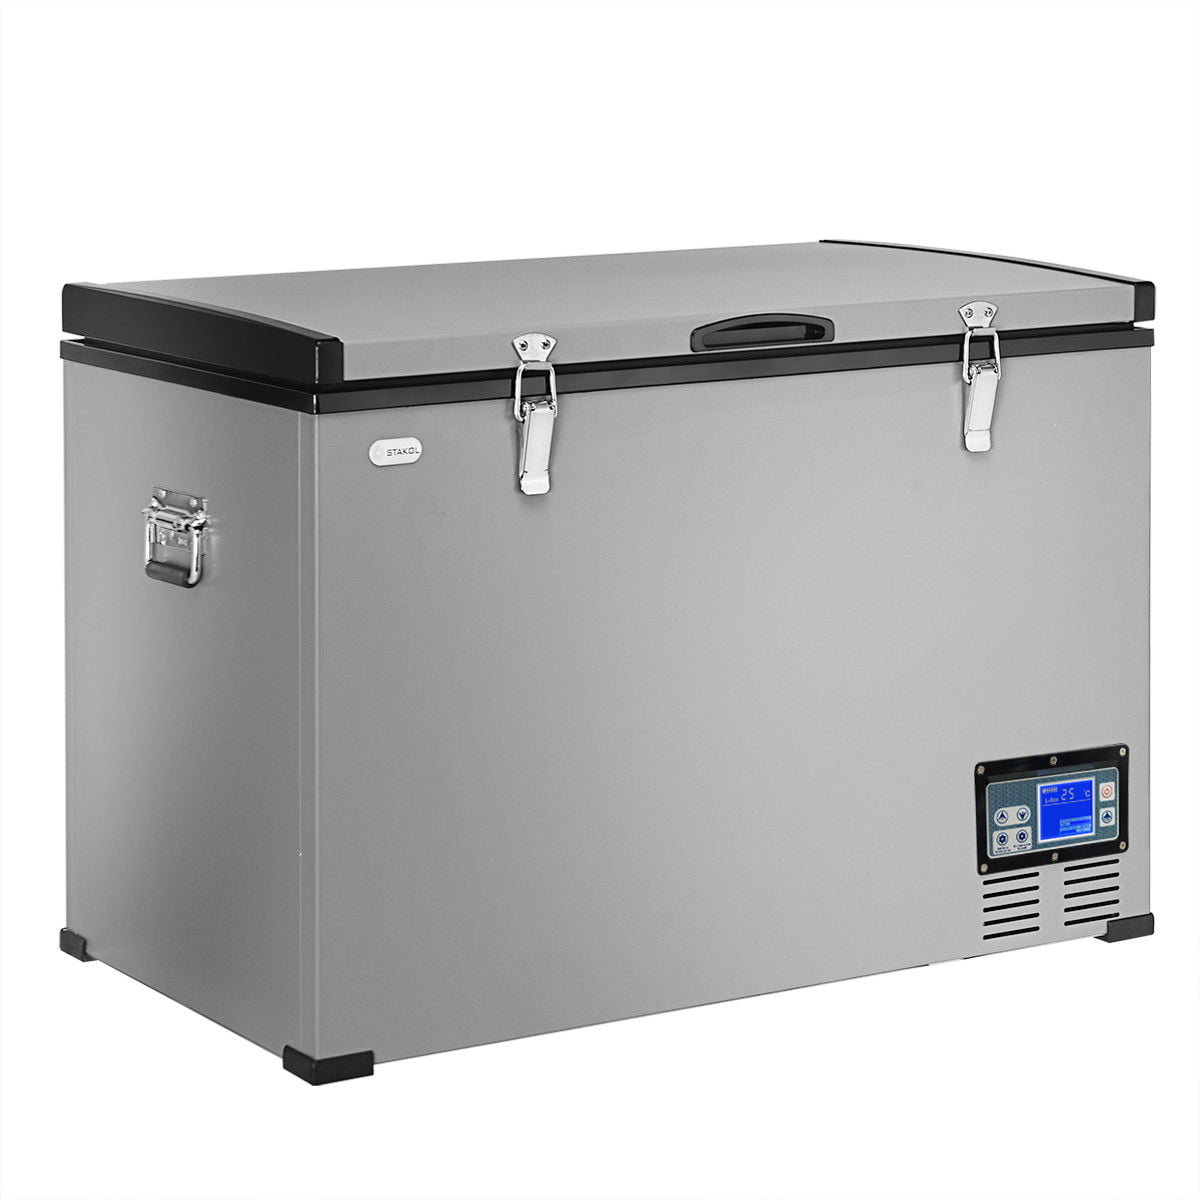 Gymax 100-Quart Portable Electric Car Cooler Refrigerator / Freezer